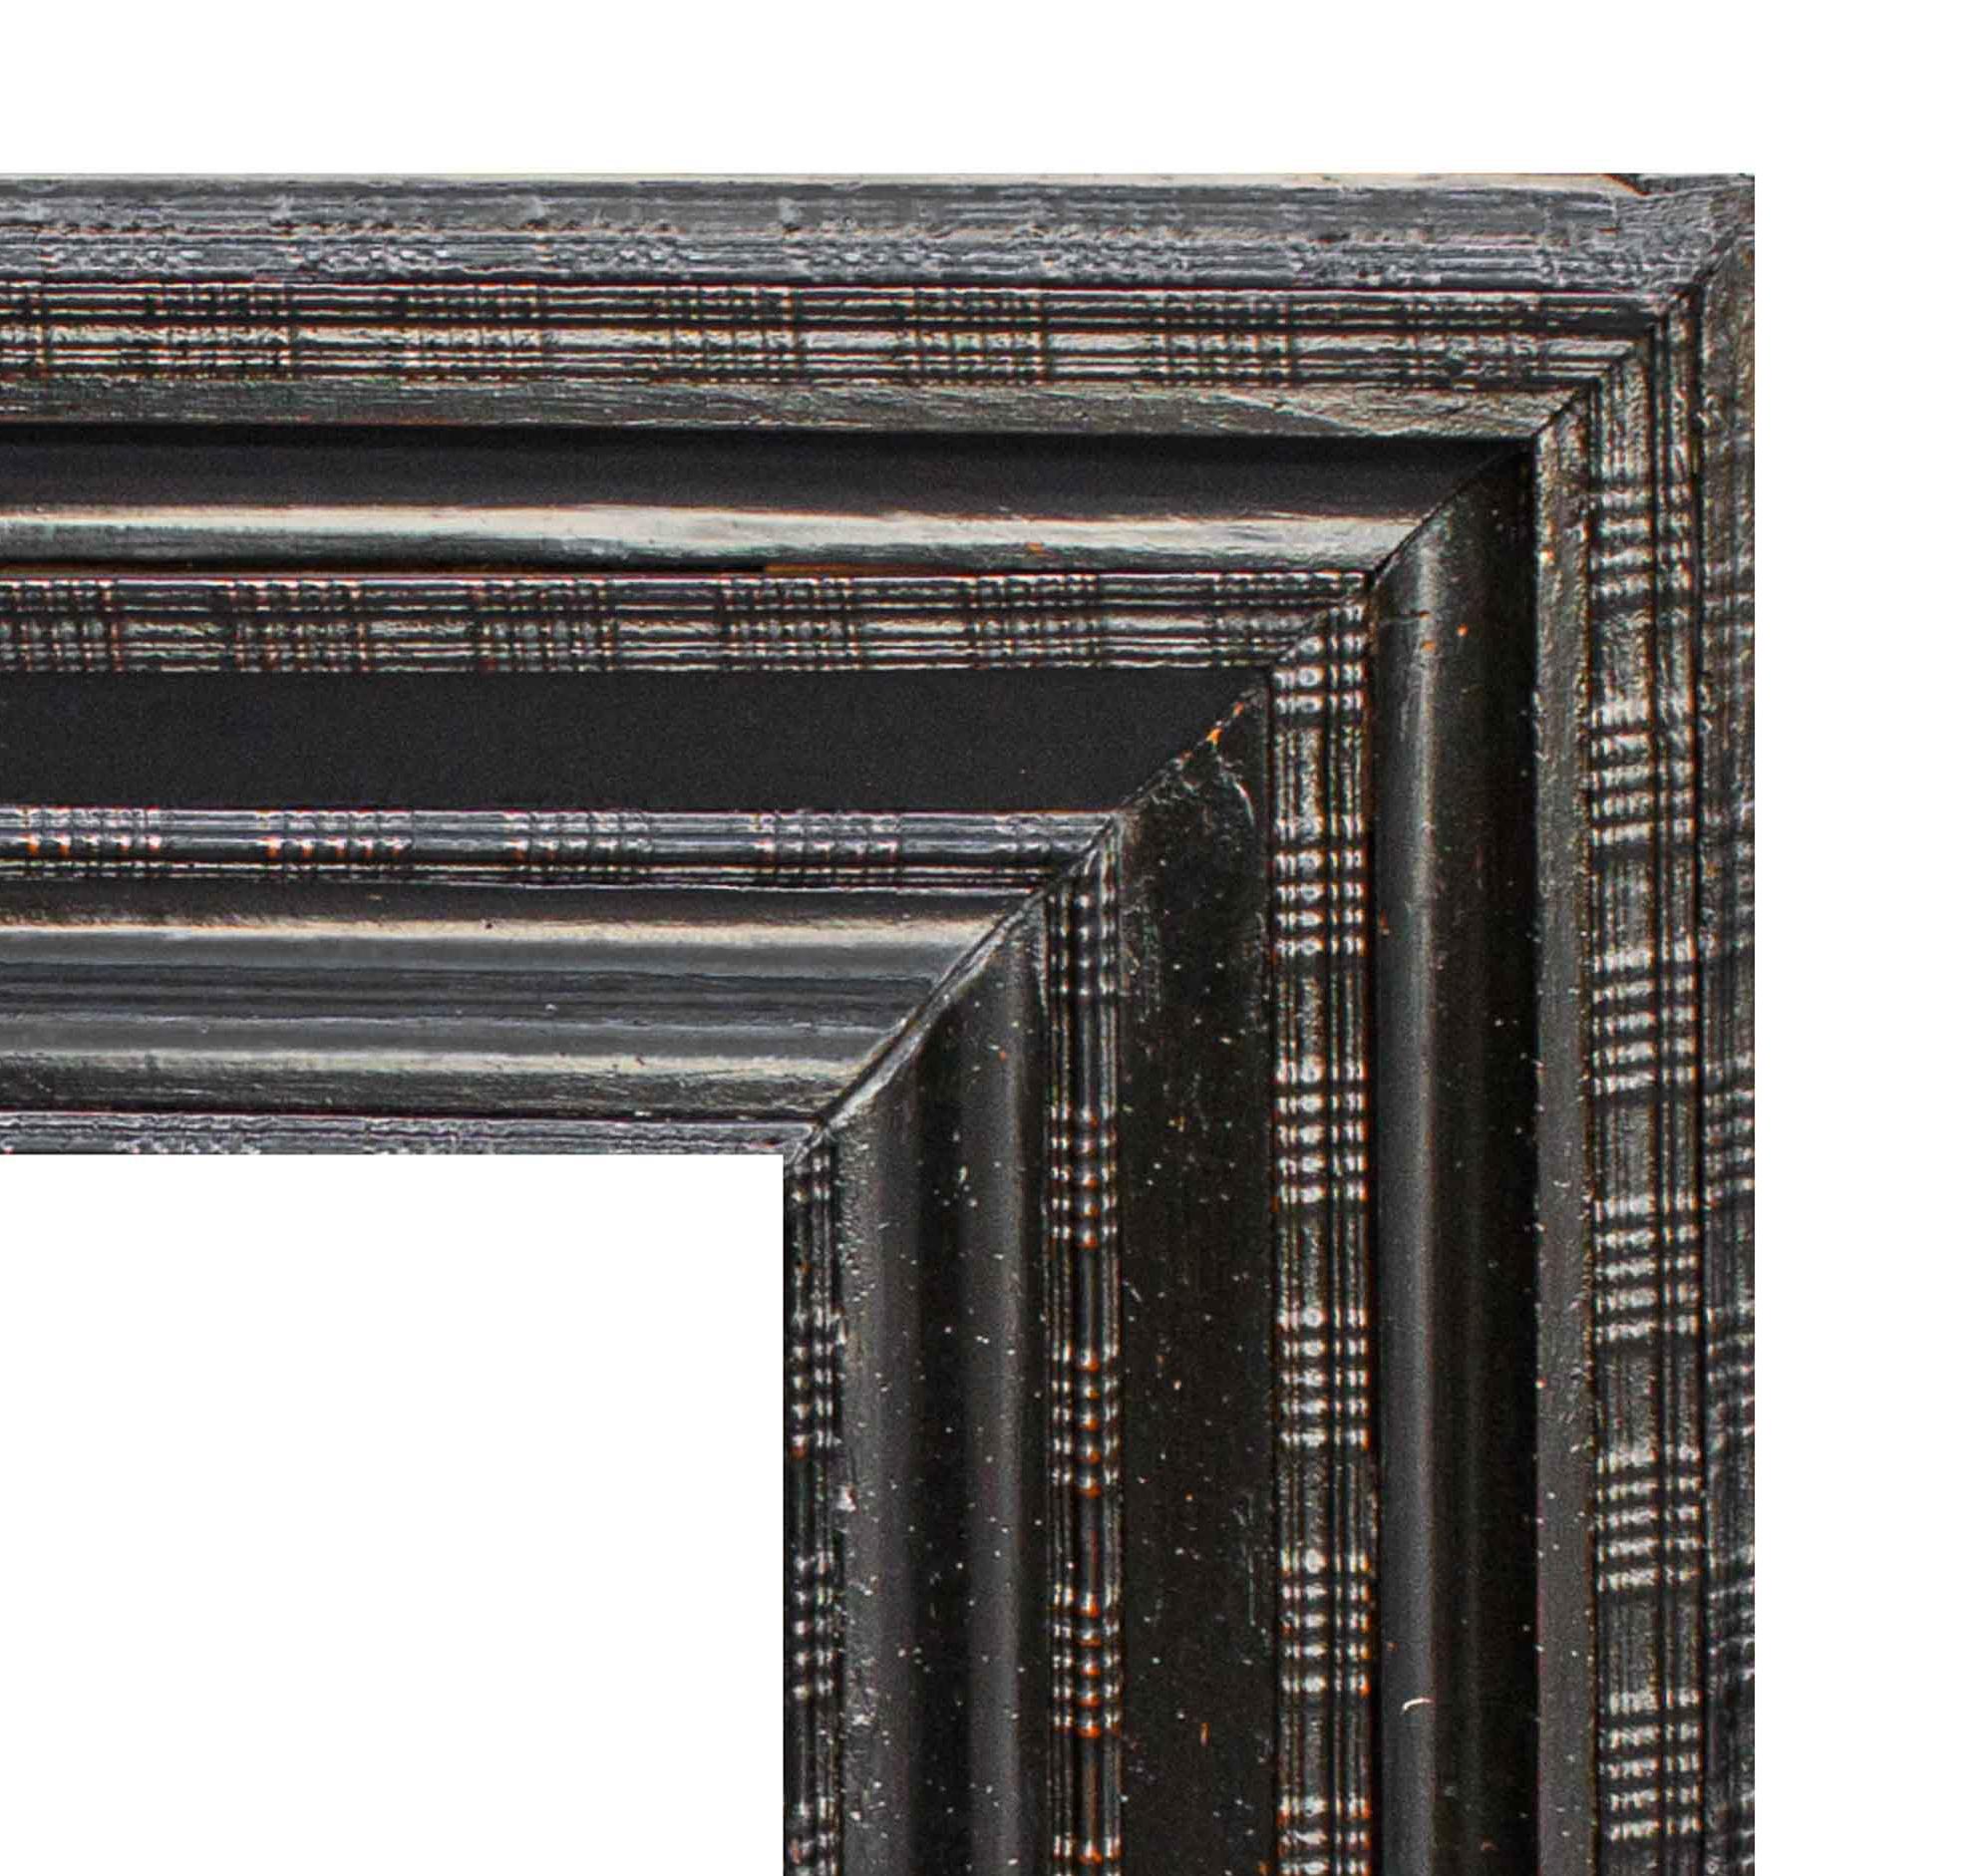 17. Jahrhundert
Guillochierter Rahmen in ebonisierter Ausführung
Holz, cm 89 x 79

Der untersuchte ebonisierte Rahmen stammt aus dem siebzehnten Jahrhundert und weist eine Guillochierung auf, deren Band wie eine Folge von glatten Schluchten